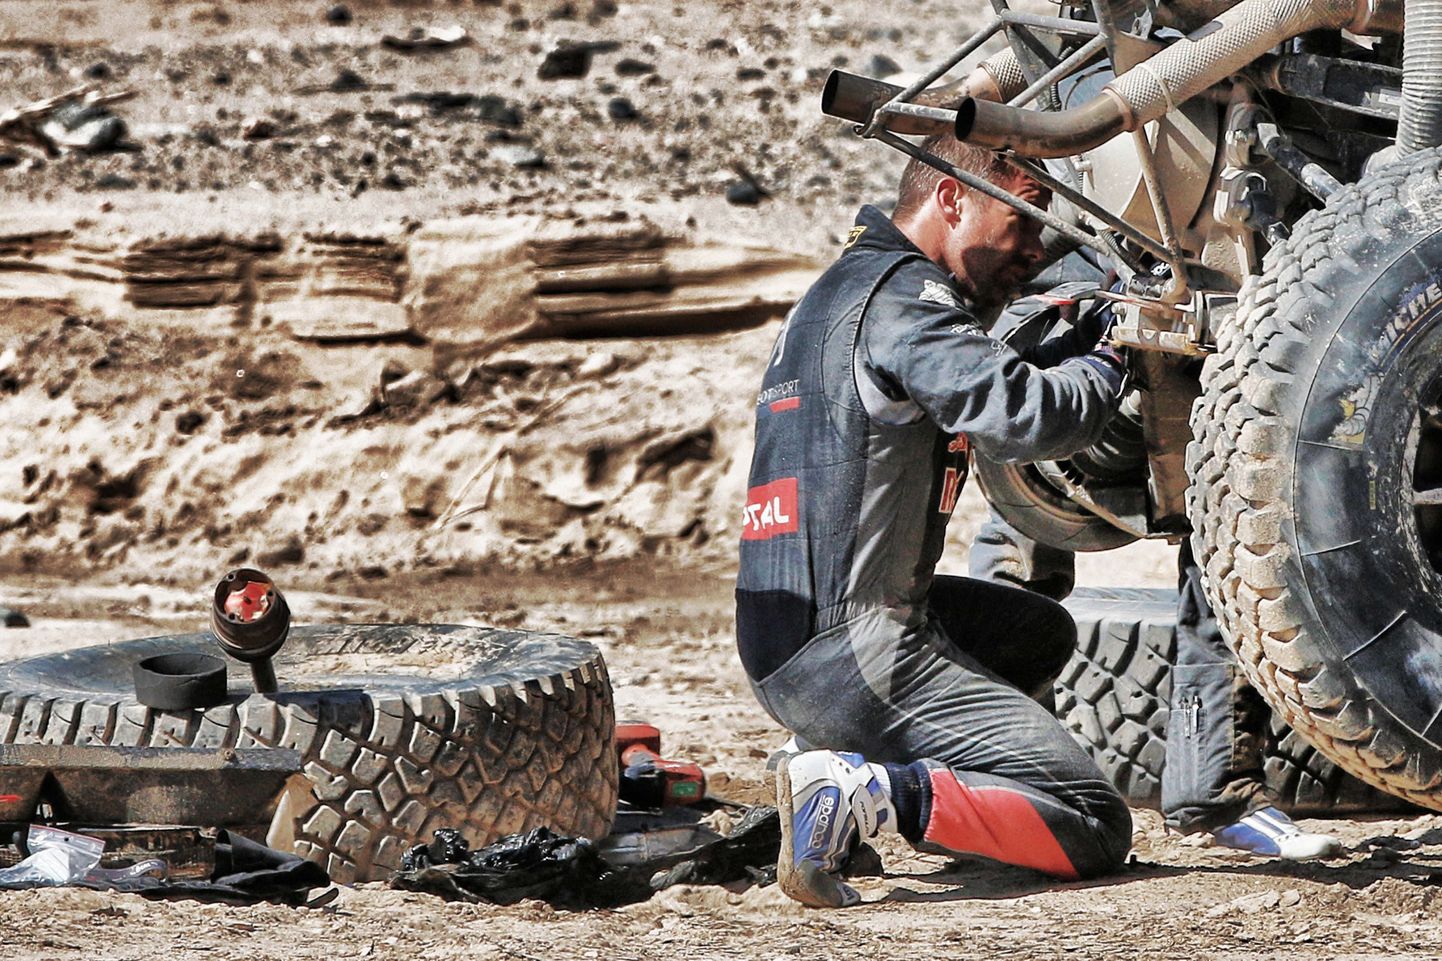 Autoralli üheksakordne maailmameister Sebastien Loeb tegi Dakari rallil ränga avarii.